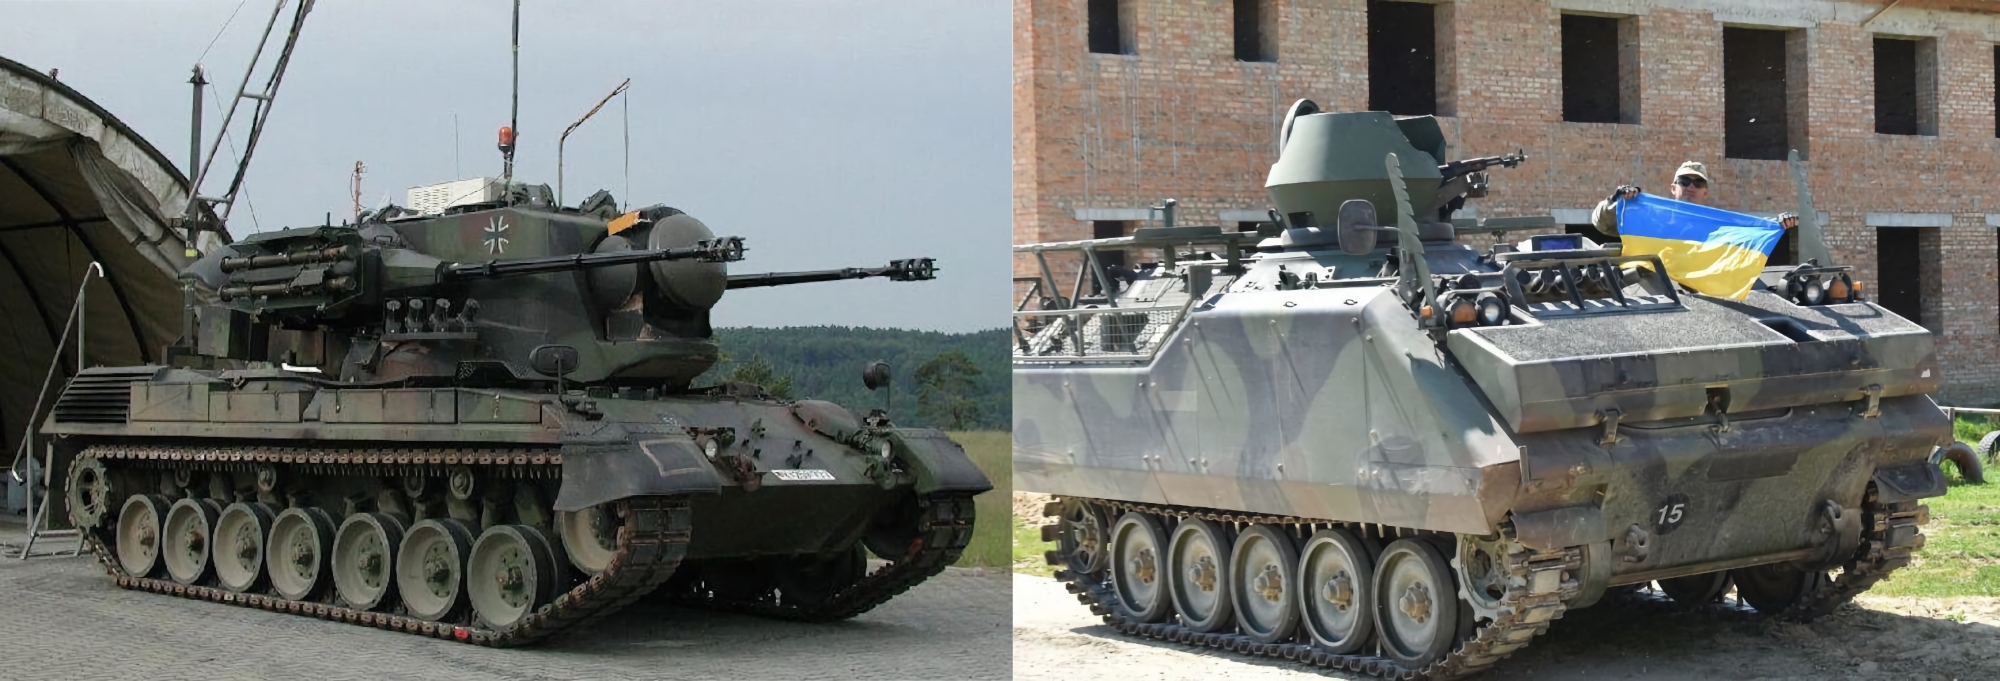 L'Allemagne transfère à l'Ukraine 3 systèmes de défense aérienne automoteurs Gepard supplémentaires et 11 véhicules blindés chenillés de transport de troupes M113.